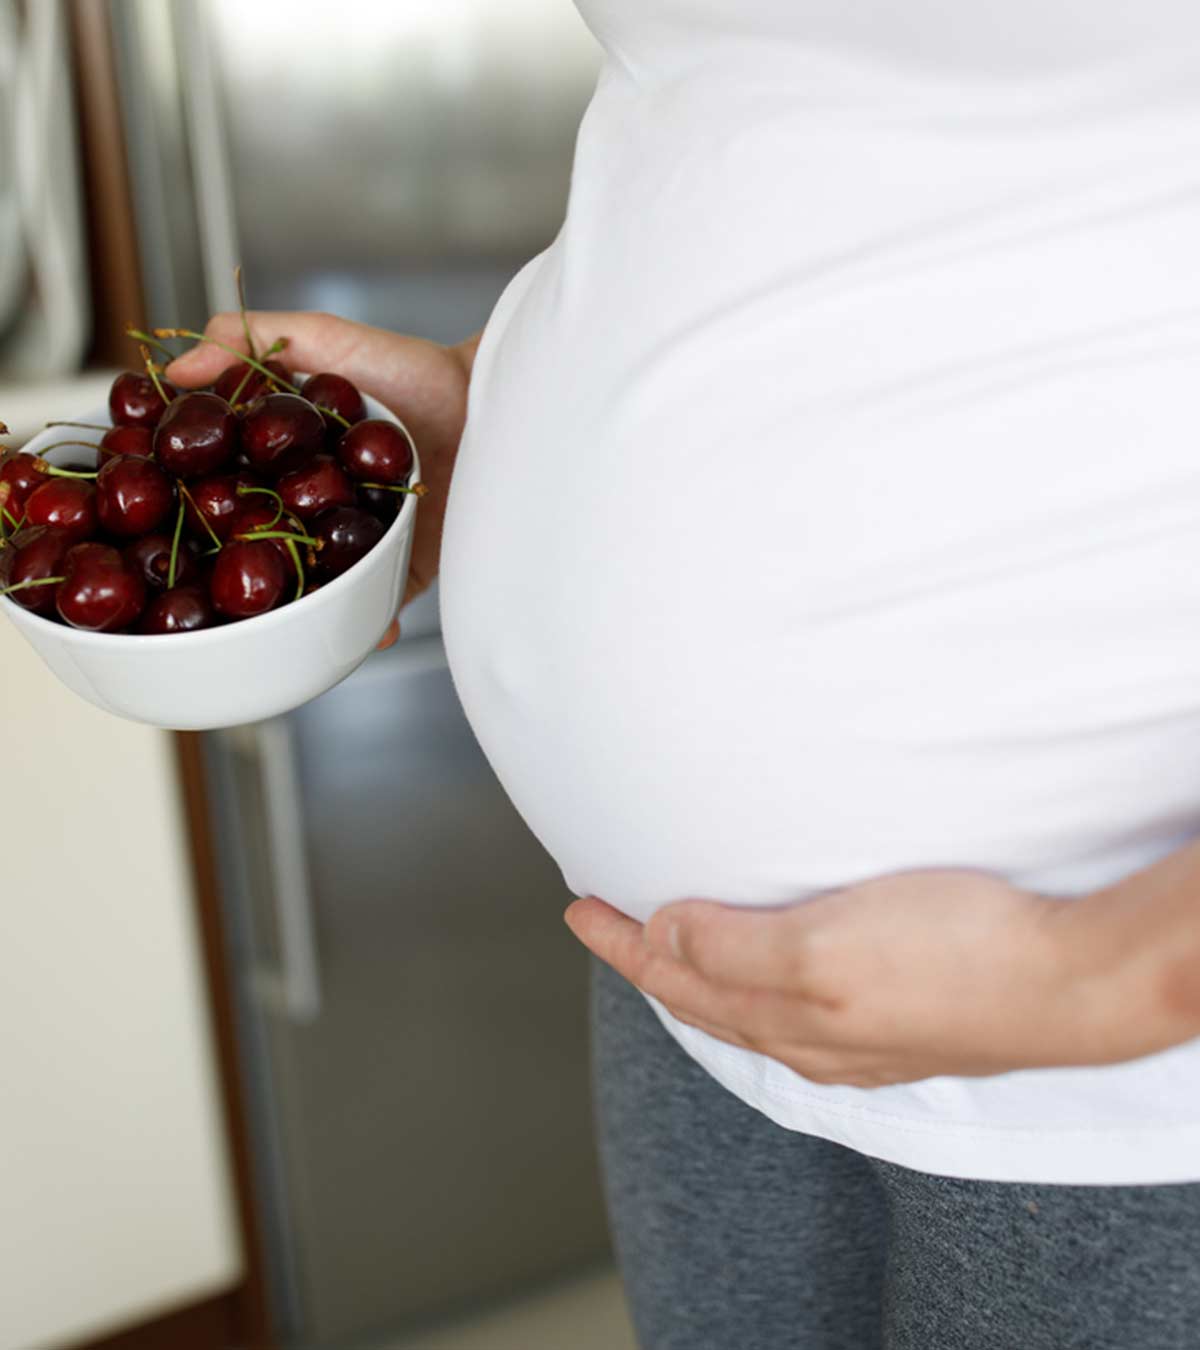 क्या प्रेगनेंसी में चेरी खा सकते हैं? फायदे व नुकसान | Pregnancy Me Cherry Khana